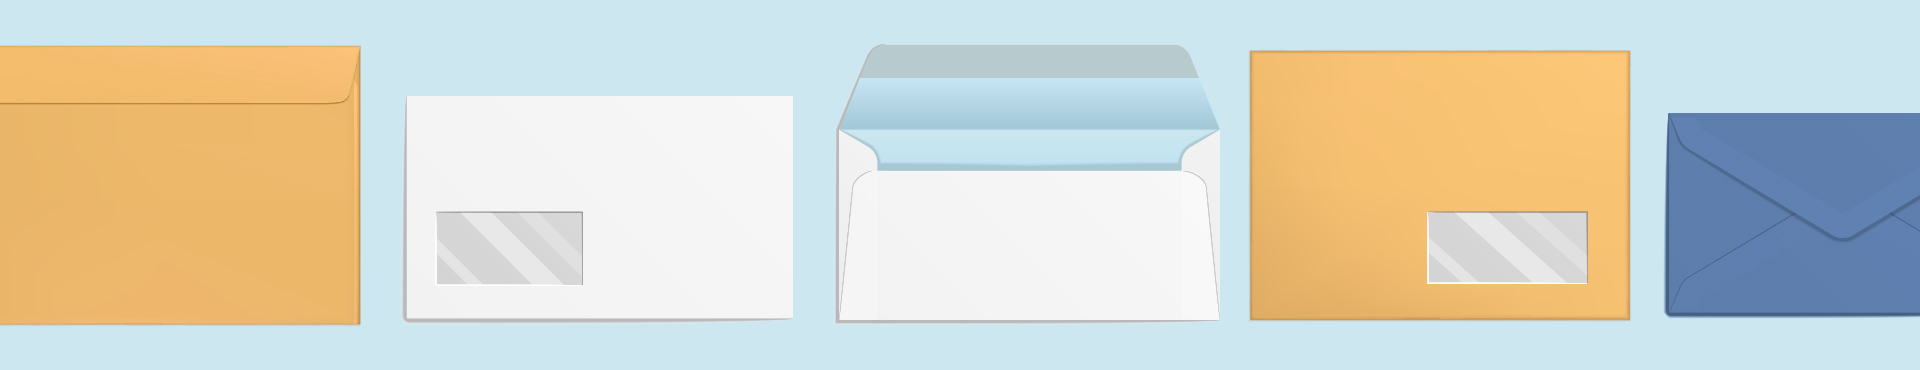 Comment choisir le bon format d'enveloppes ?